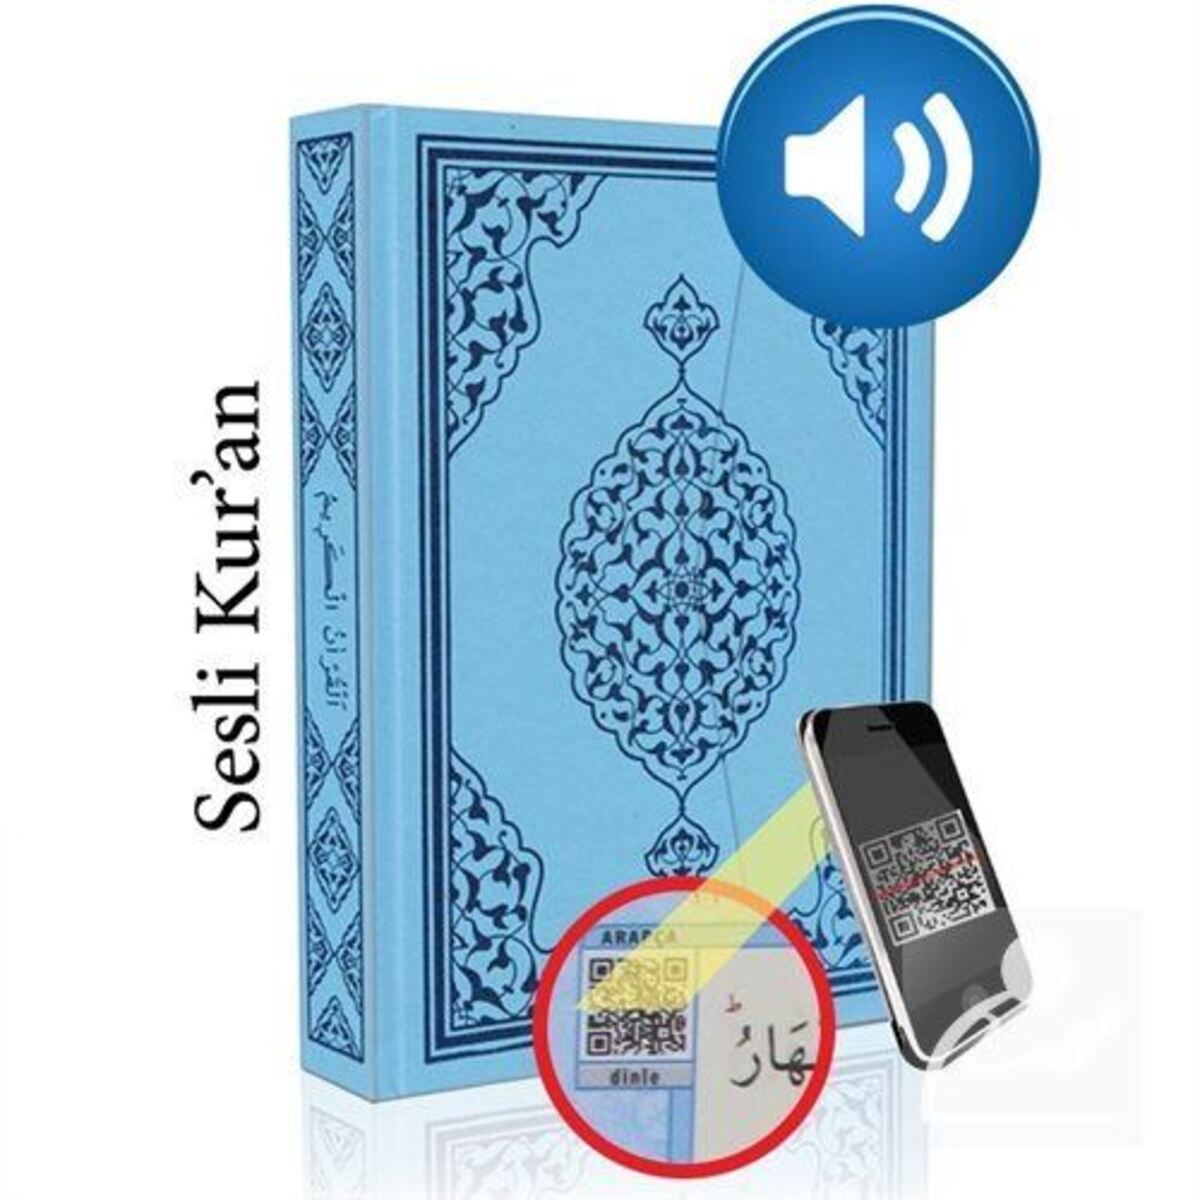 Merve Yayınları Kur'an-ı Kerim Bilgisayar Hatlı Mavi Renk Orta Boy (KUR-AN 015) Sesli Kur-an